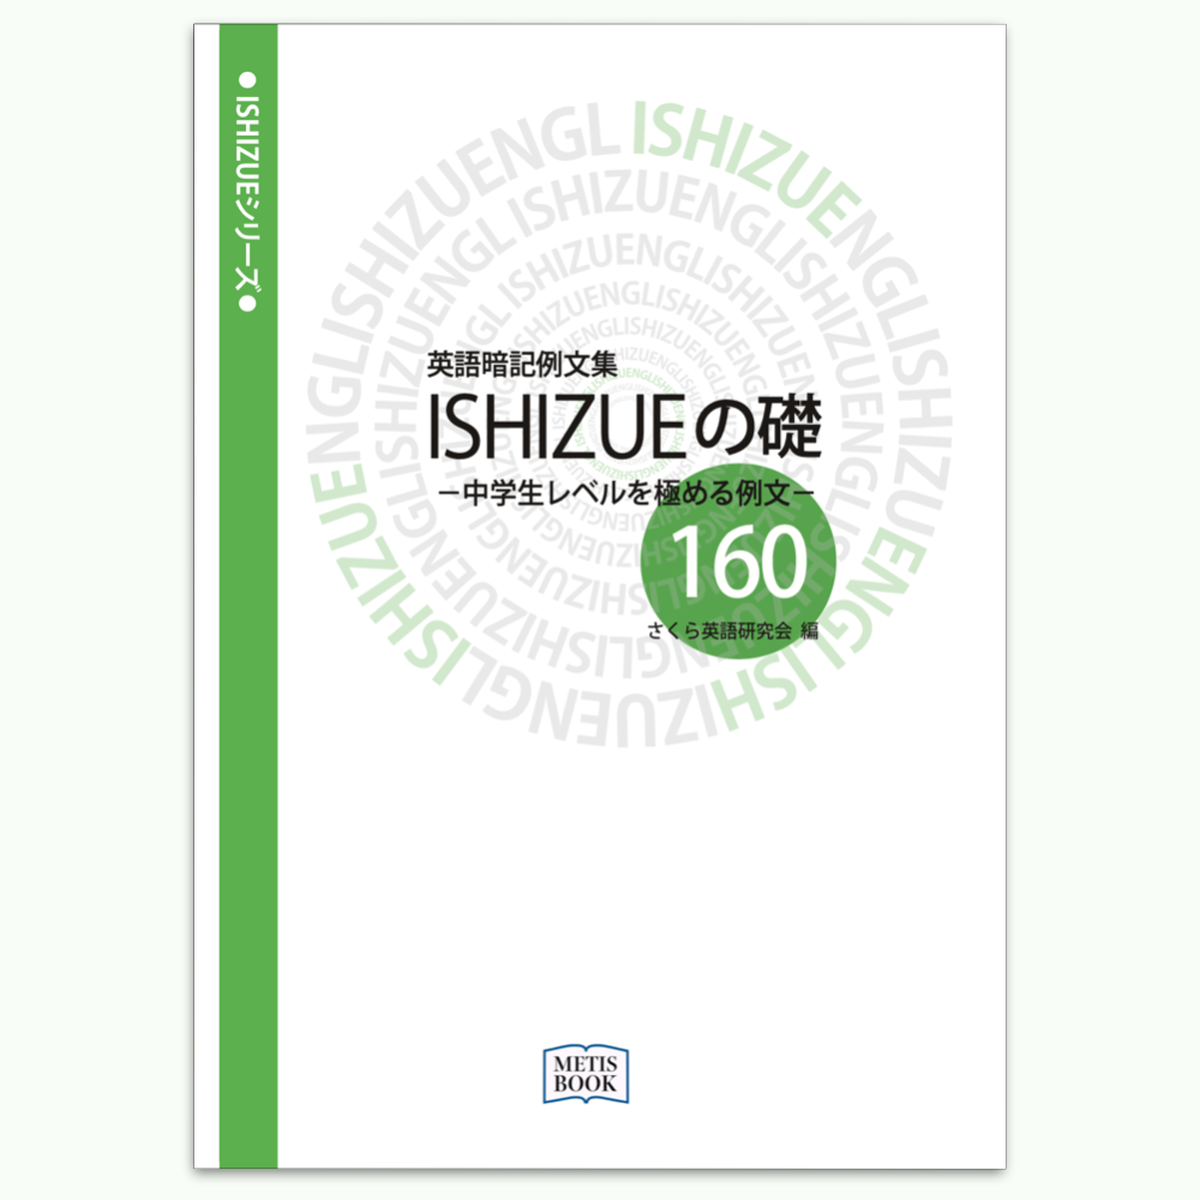 中学生レベルを極める例文 英語暗記例文集 Ishizueの礎160 本 Metis Book